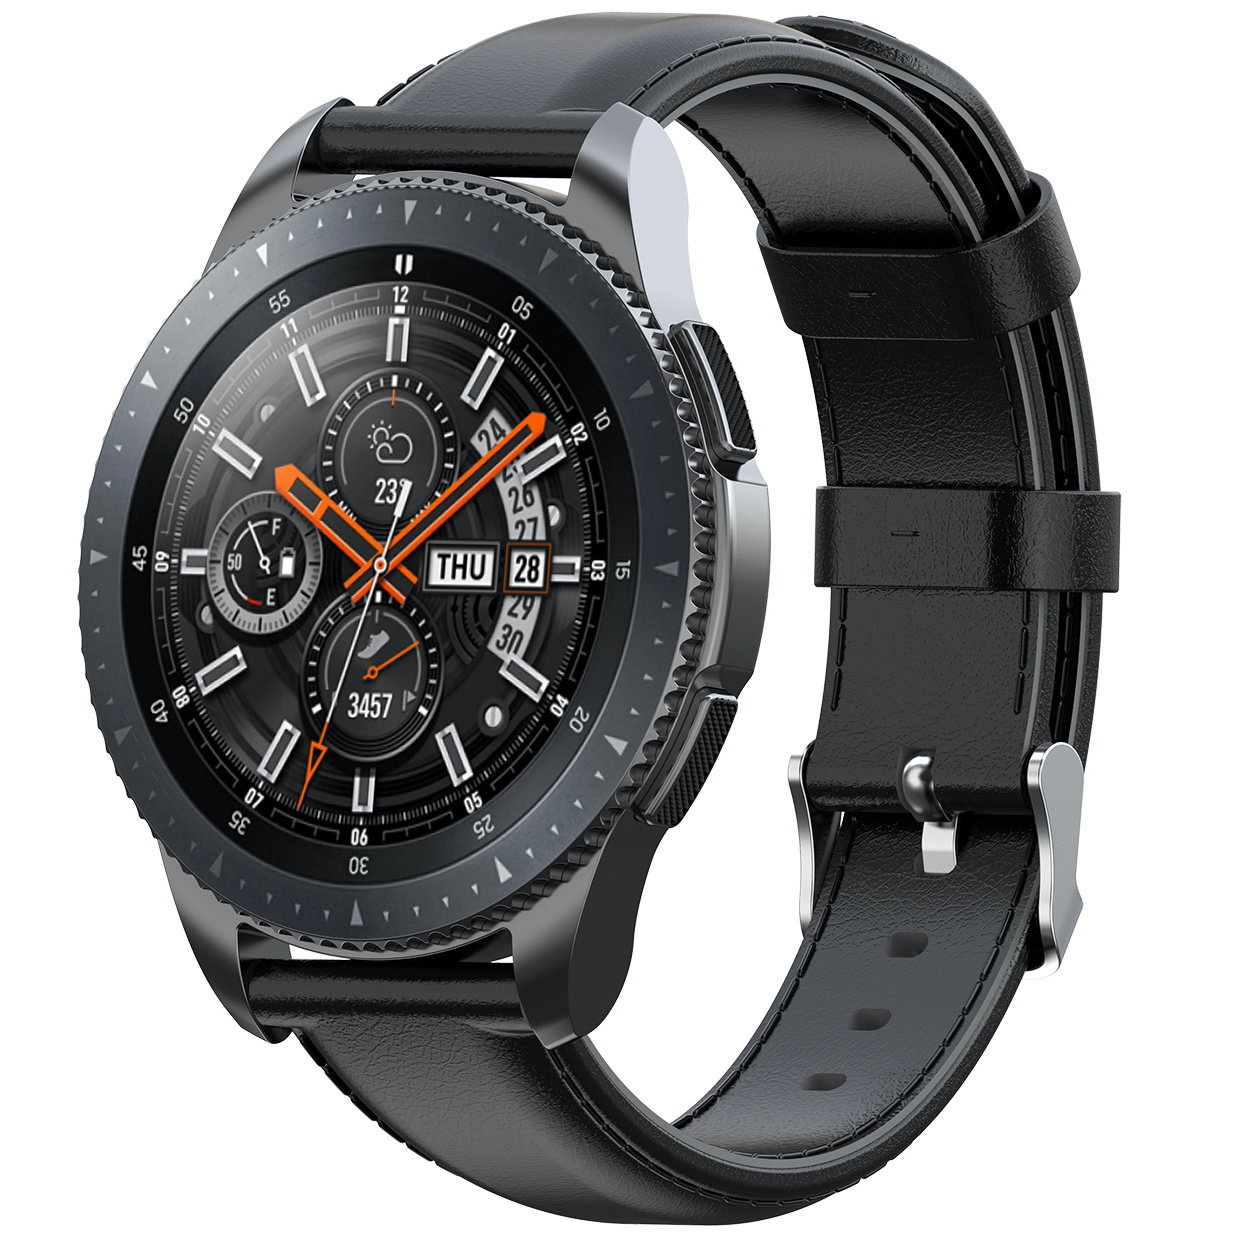 Samsung Galaxy Watch Leather Strap - Black